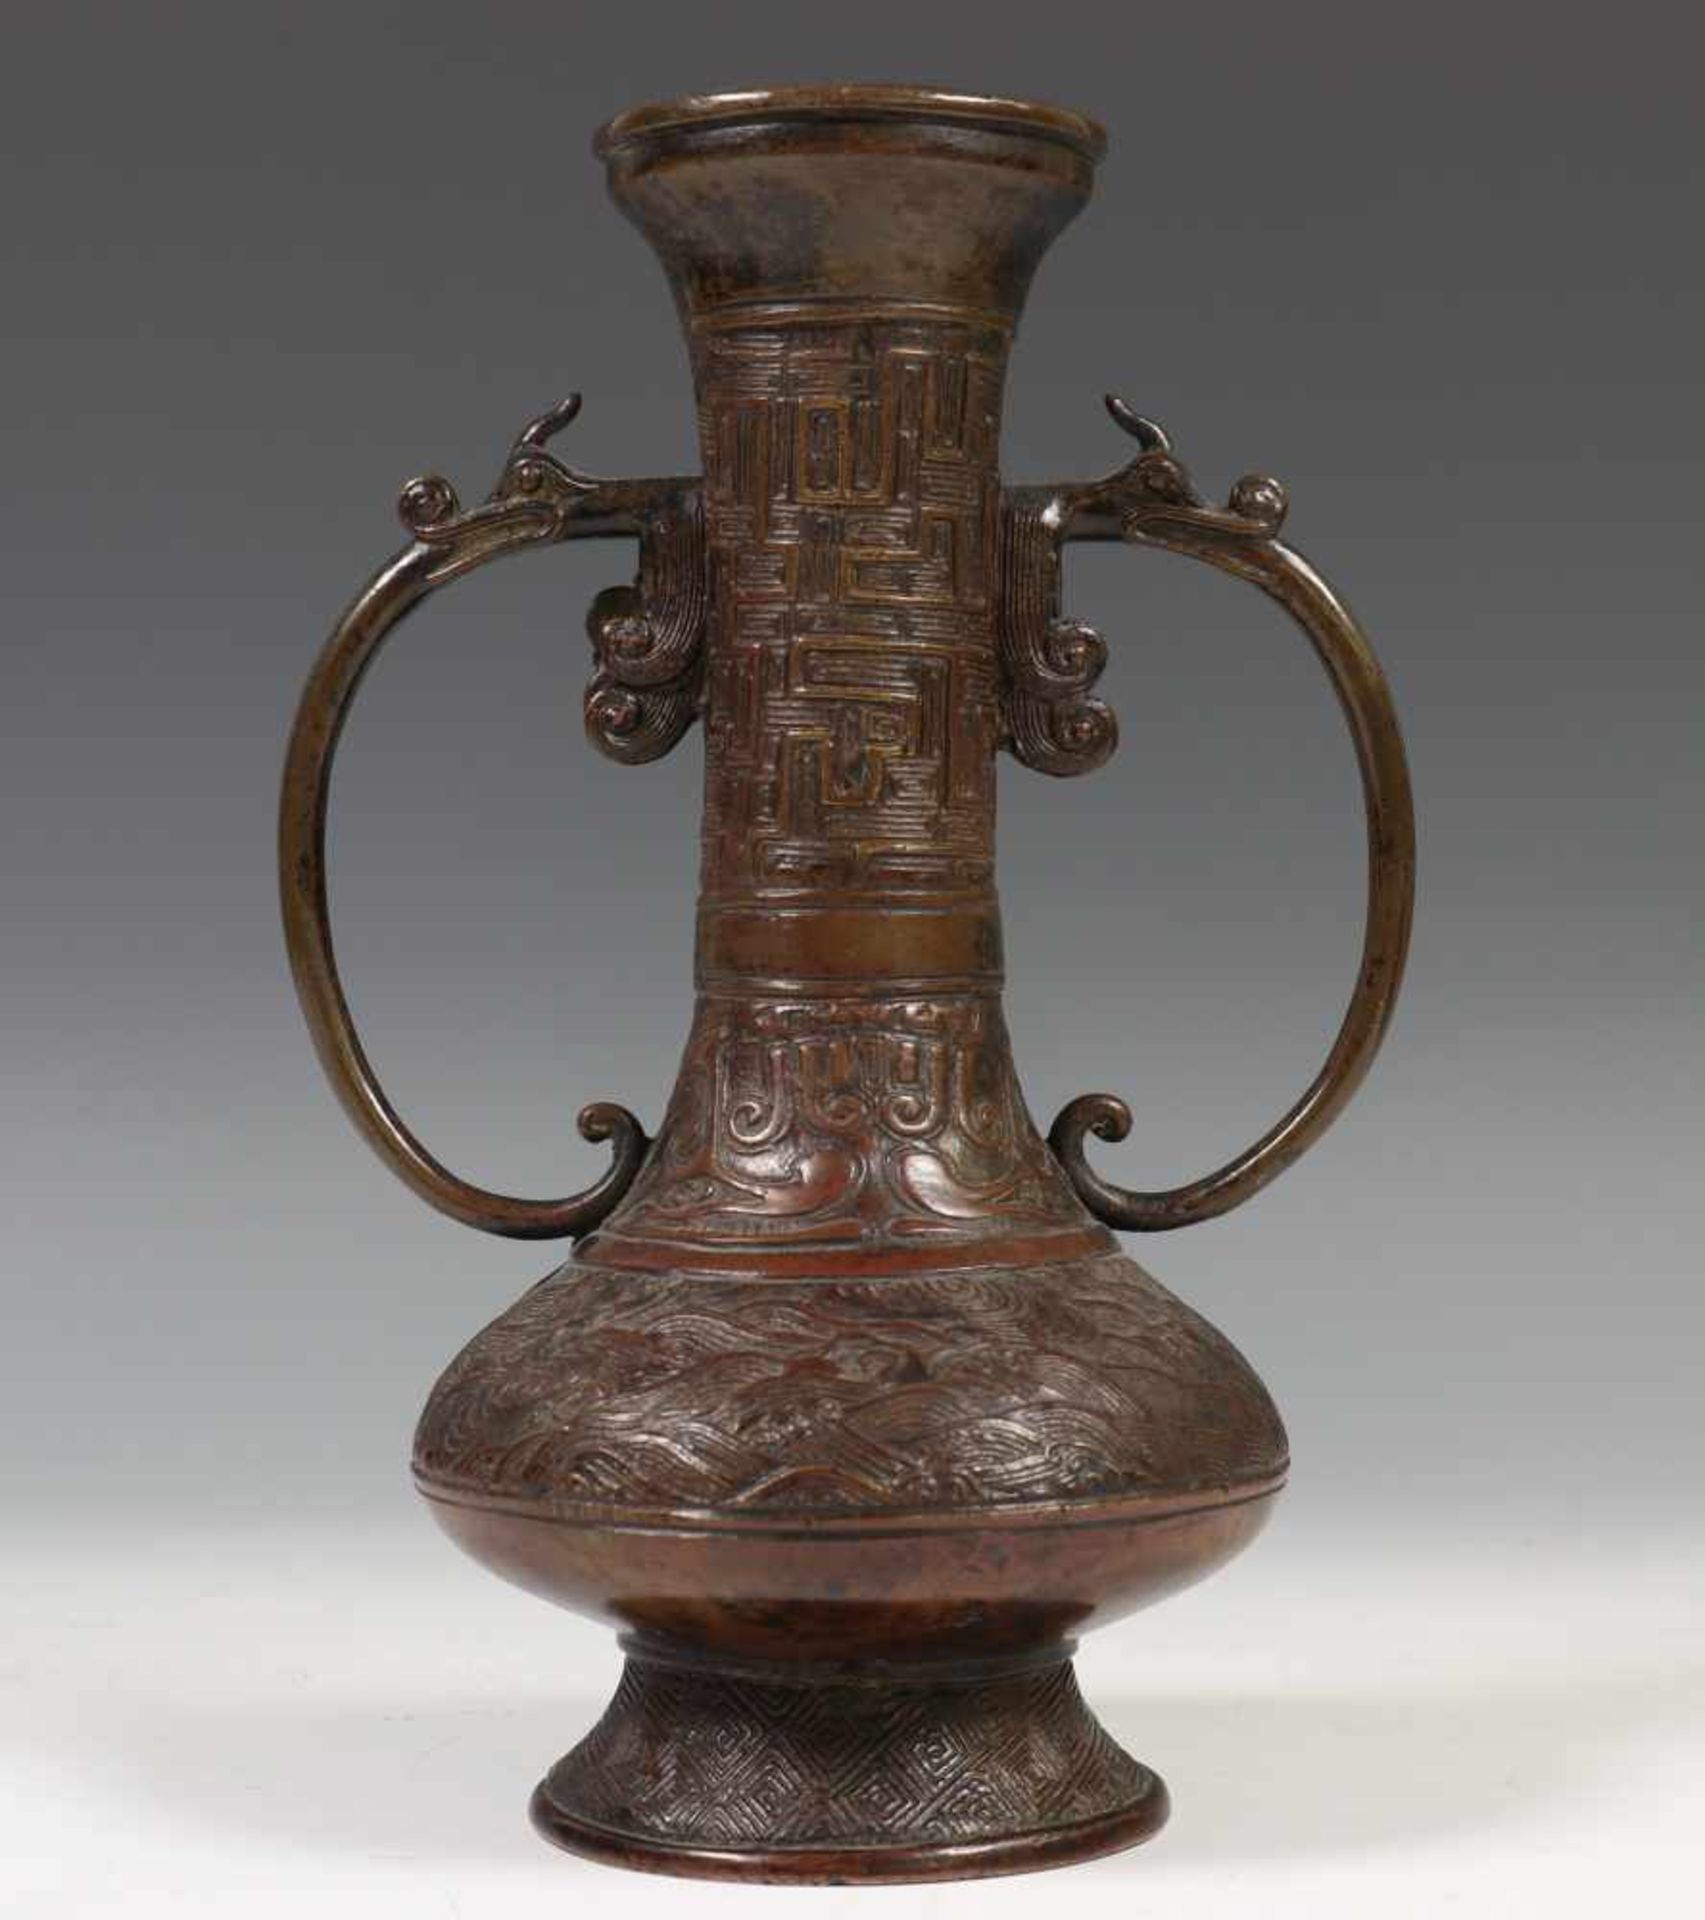 China, bronzen archaistische vaas, 18e eeuw,het lichaam gemodelleerd met golven, de lange hals met - Bild 2 aus 3